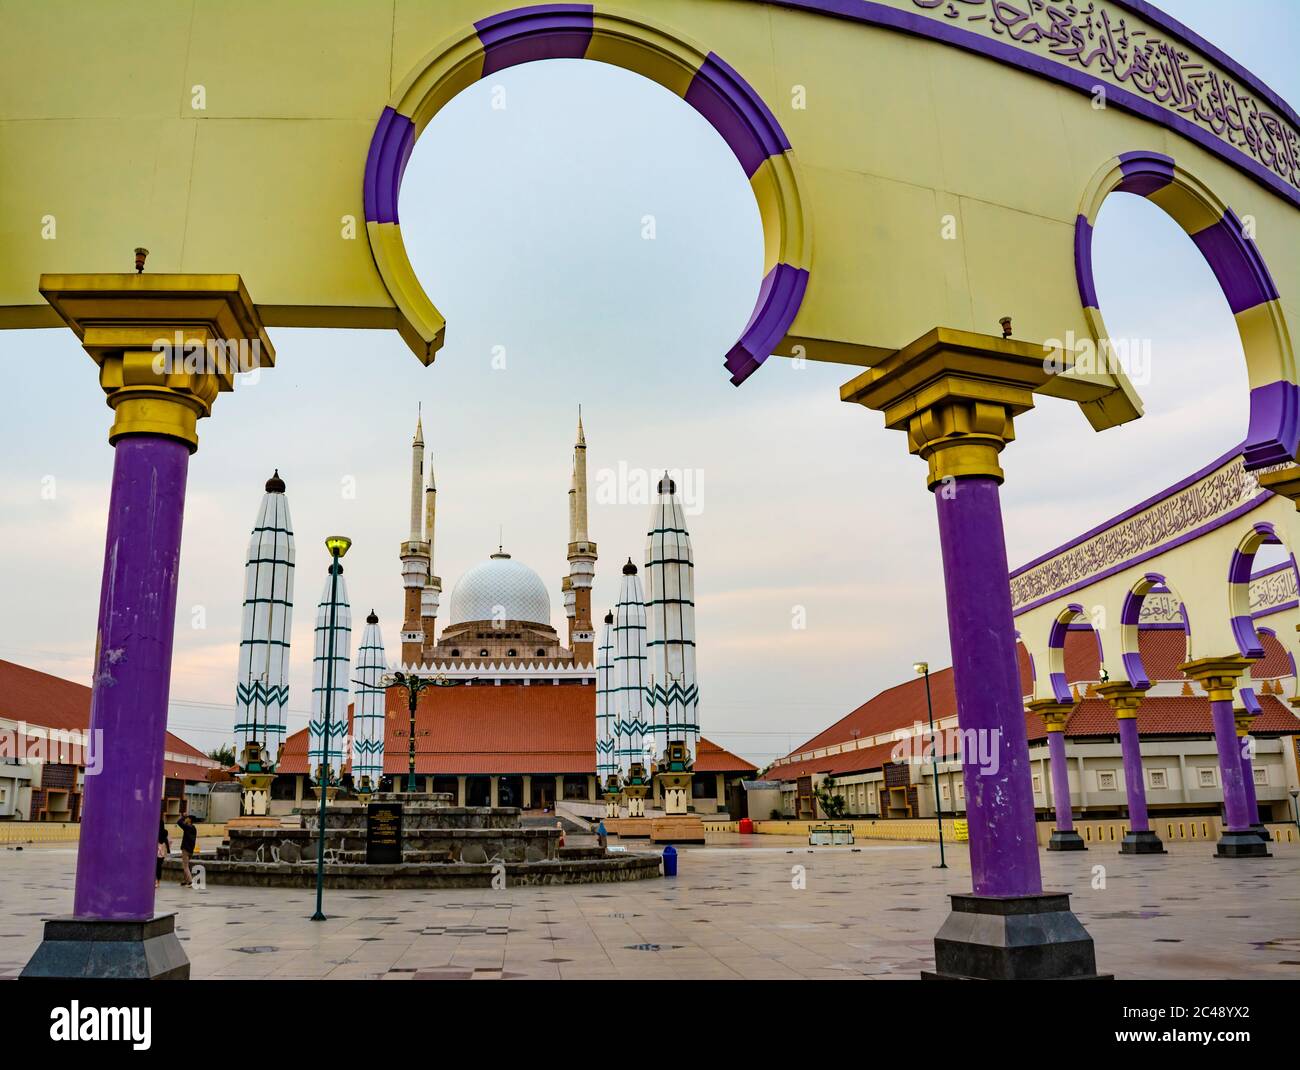 Semarang, Indonesien - CIRCA Nov 2019: Das Äußere der Masjid Agung Jawa Tengah (große Moschee von Zentral-Java). Die Wand mit arabischer Kalligraphie und ar Stockfoto